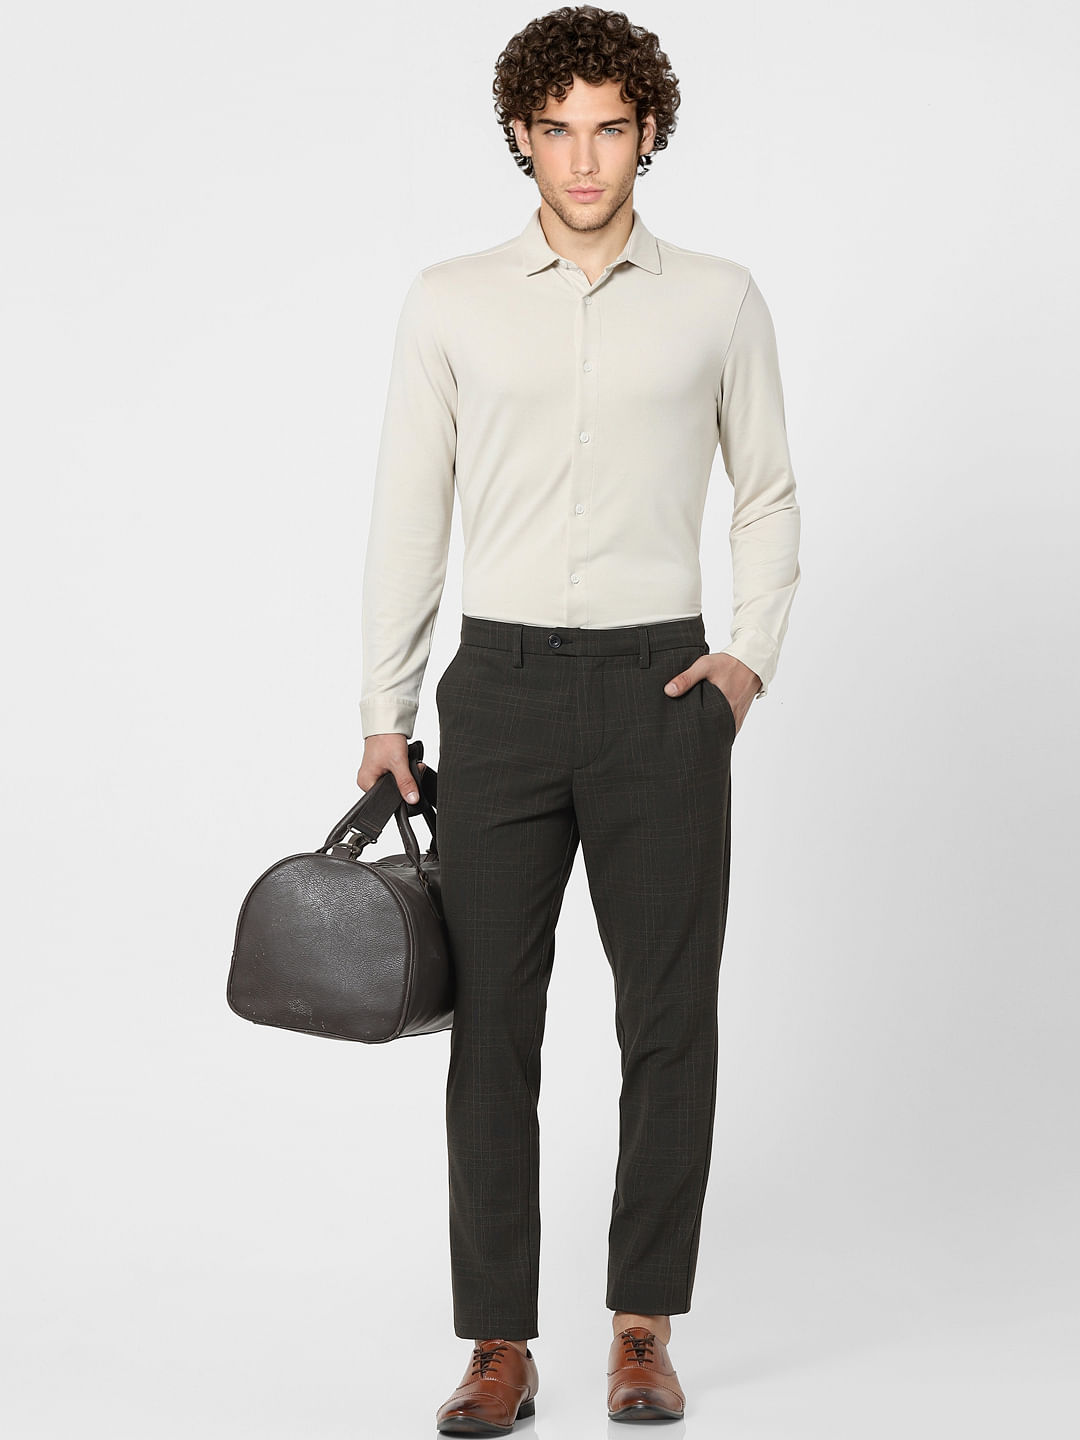 Buy Front pocket beige shirt  olive pants Designer Wear  Ensemble